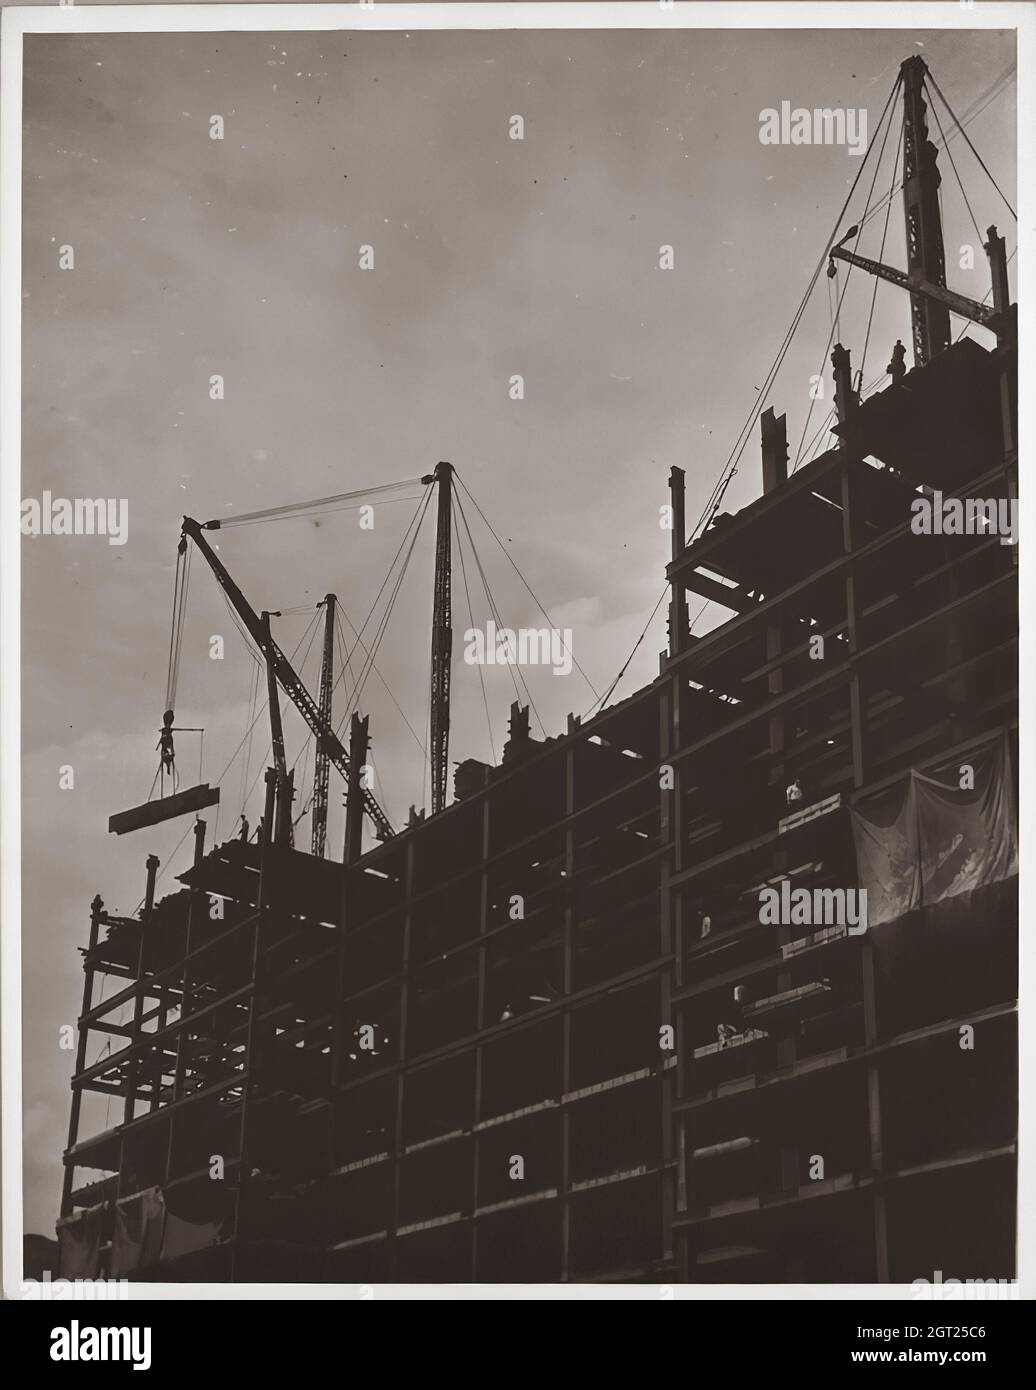 EMPIRE STATE BUILDING NY, NY 1930 - 1931. Viste generali e dettagliate dell'Empire state Building in costruzione che mostrano i lavoratori che svolgono varie attività, tra cui posizionamento, saldatura e rivettatura dell'acciaio, sollevamento di materiali e forniture, funzionamento e riparazione di macchinari. Ci sono anche vedute a volo d'uccello del centro di Manhattan che mostrano altri edifici in costruzione. Fotografie di: Hine, Lewis Wickes, 1874-1940 . Foto Stock